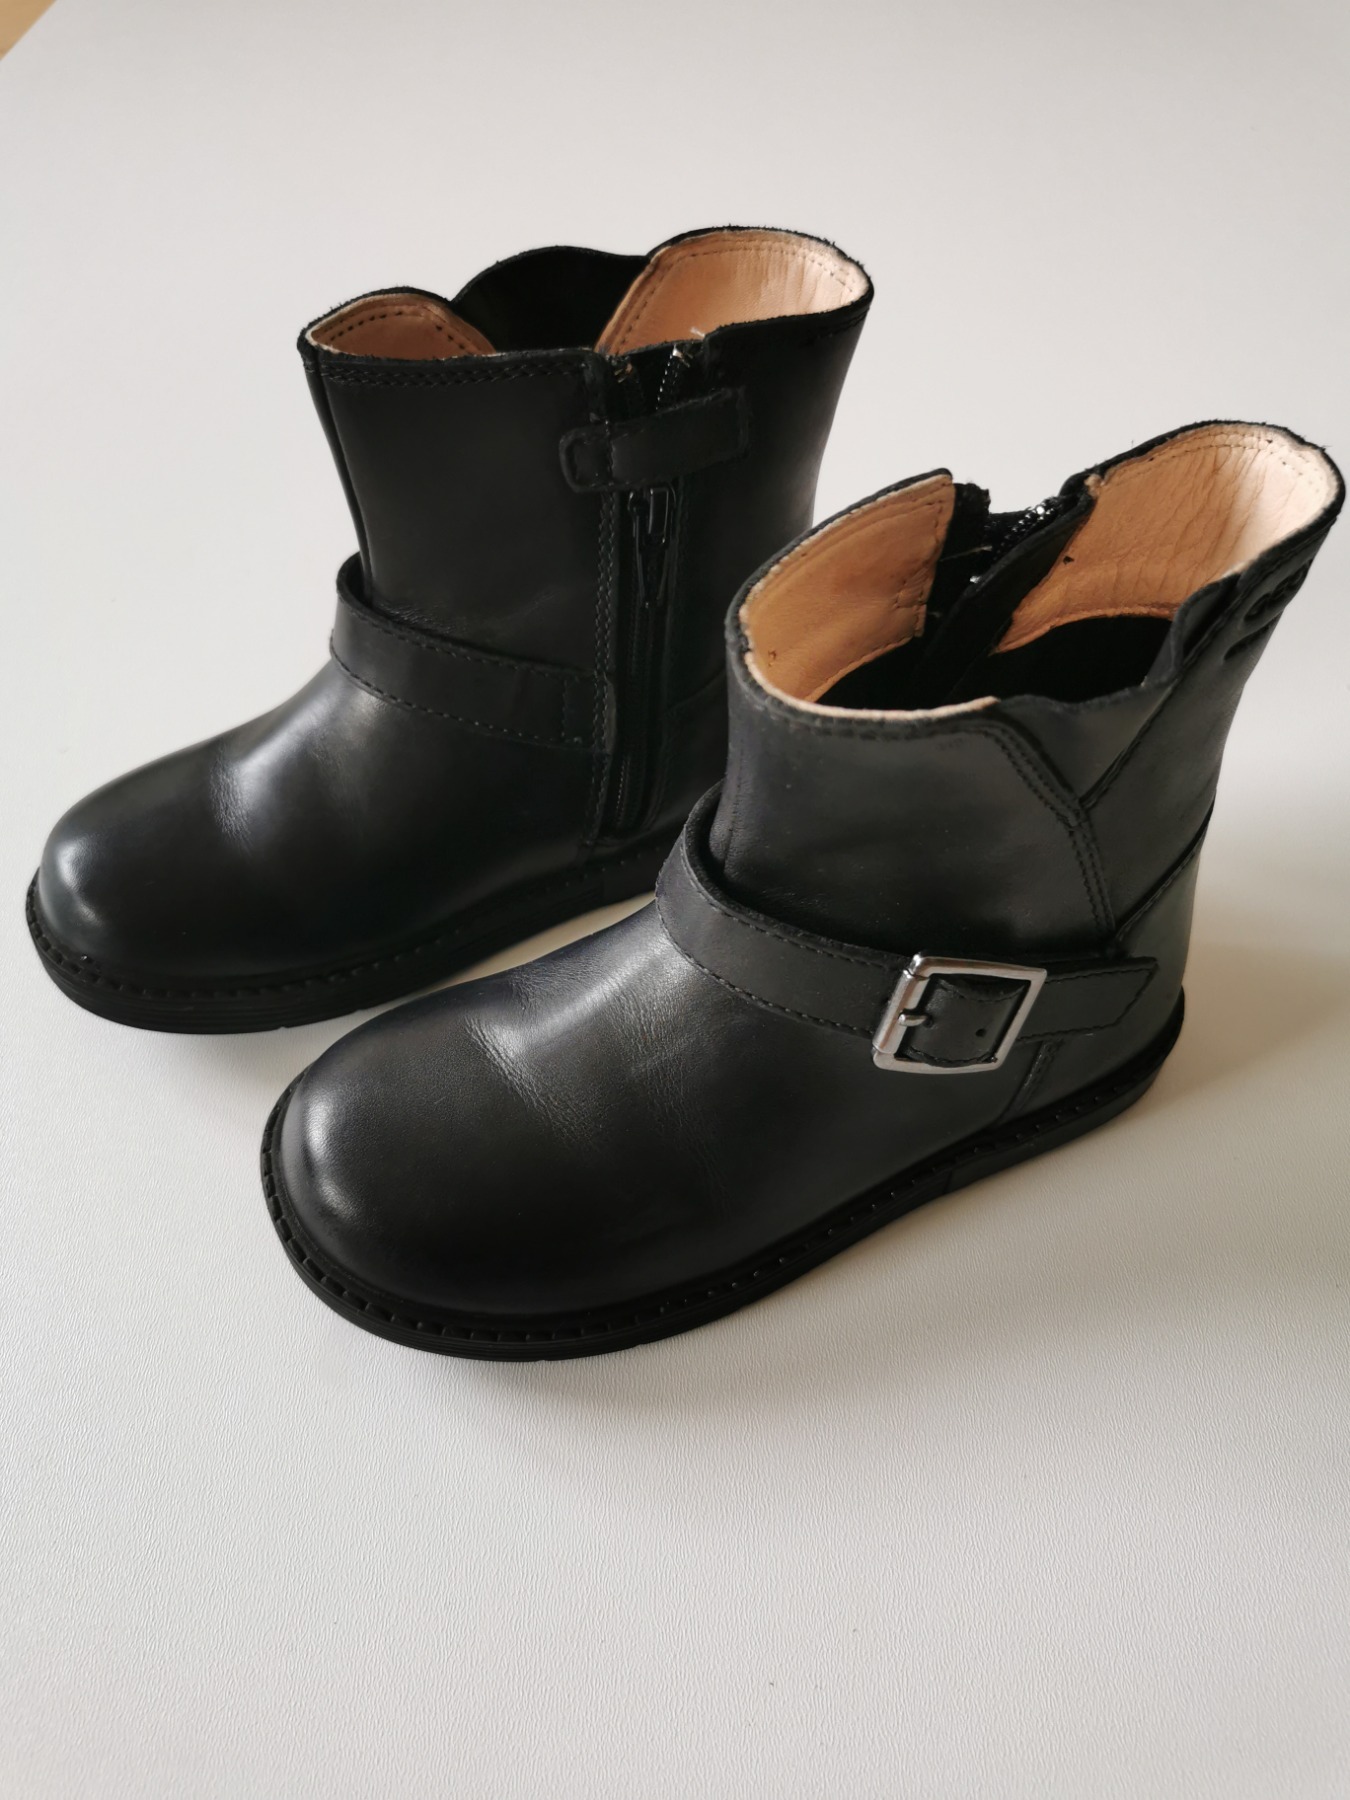 Boots waterproof - Größe 25